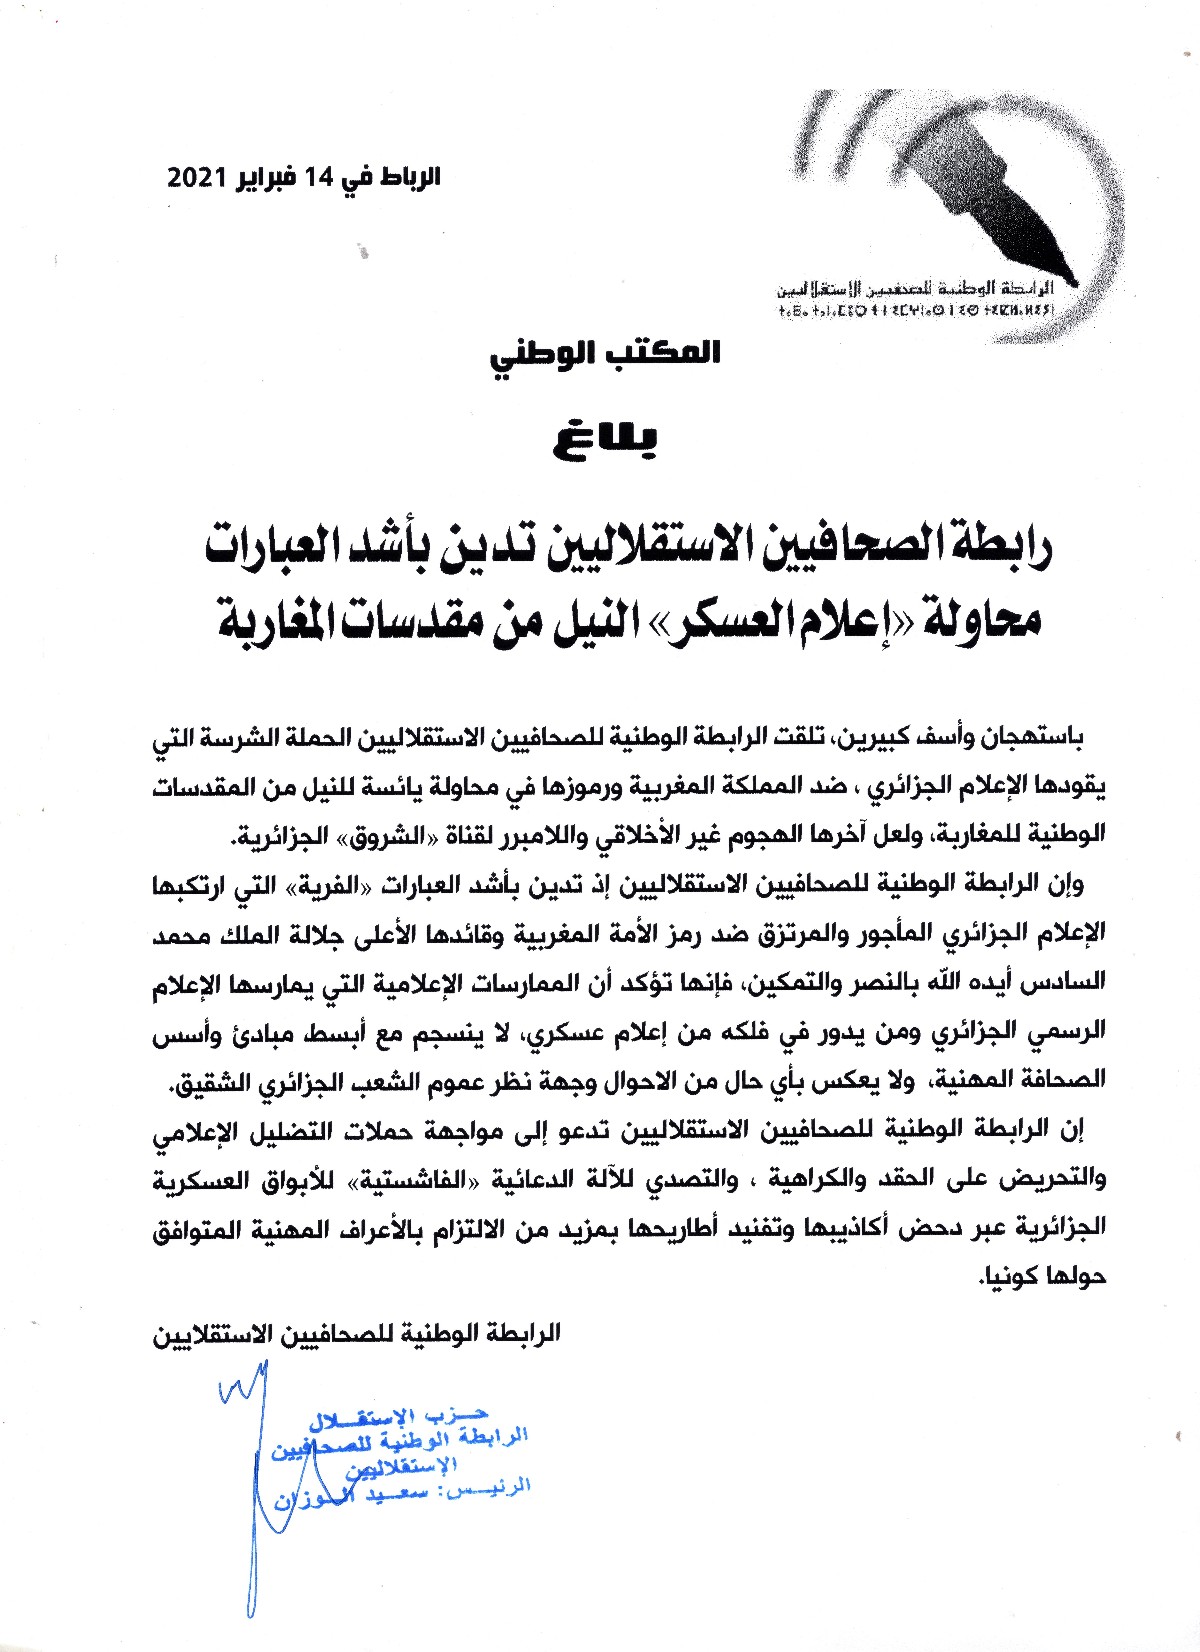 رابطة الصحافيين الاستقلاليين تدين بأشد العبارات محاولة "إعلام العسكر" النيل من مقدسات المغاربة